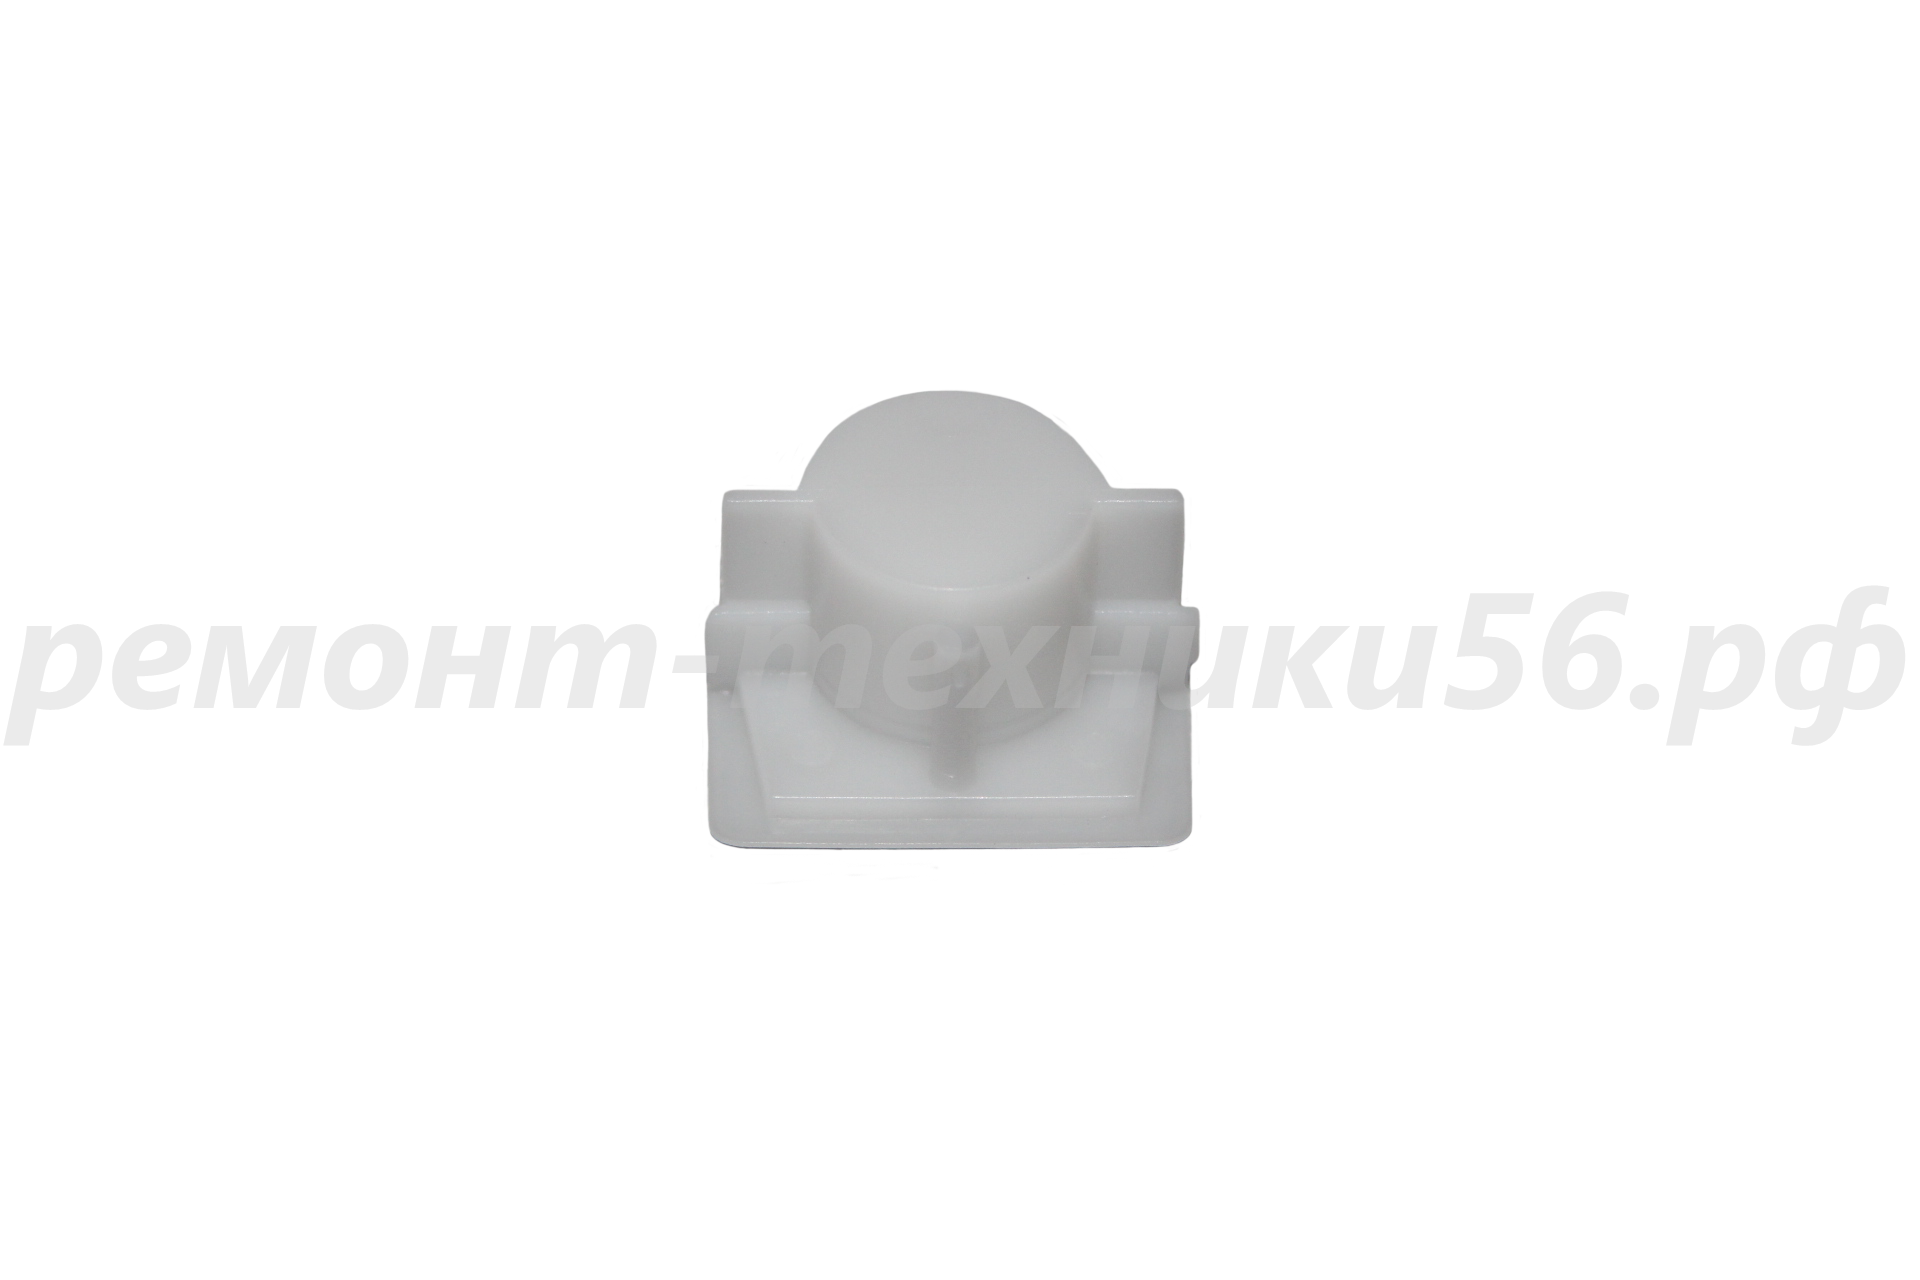 Подшипник скольжения задний Electrolux EHAW - 7525D (terracotta) по лучшей цене фото4